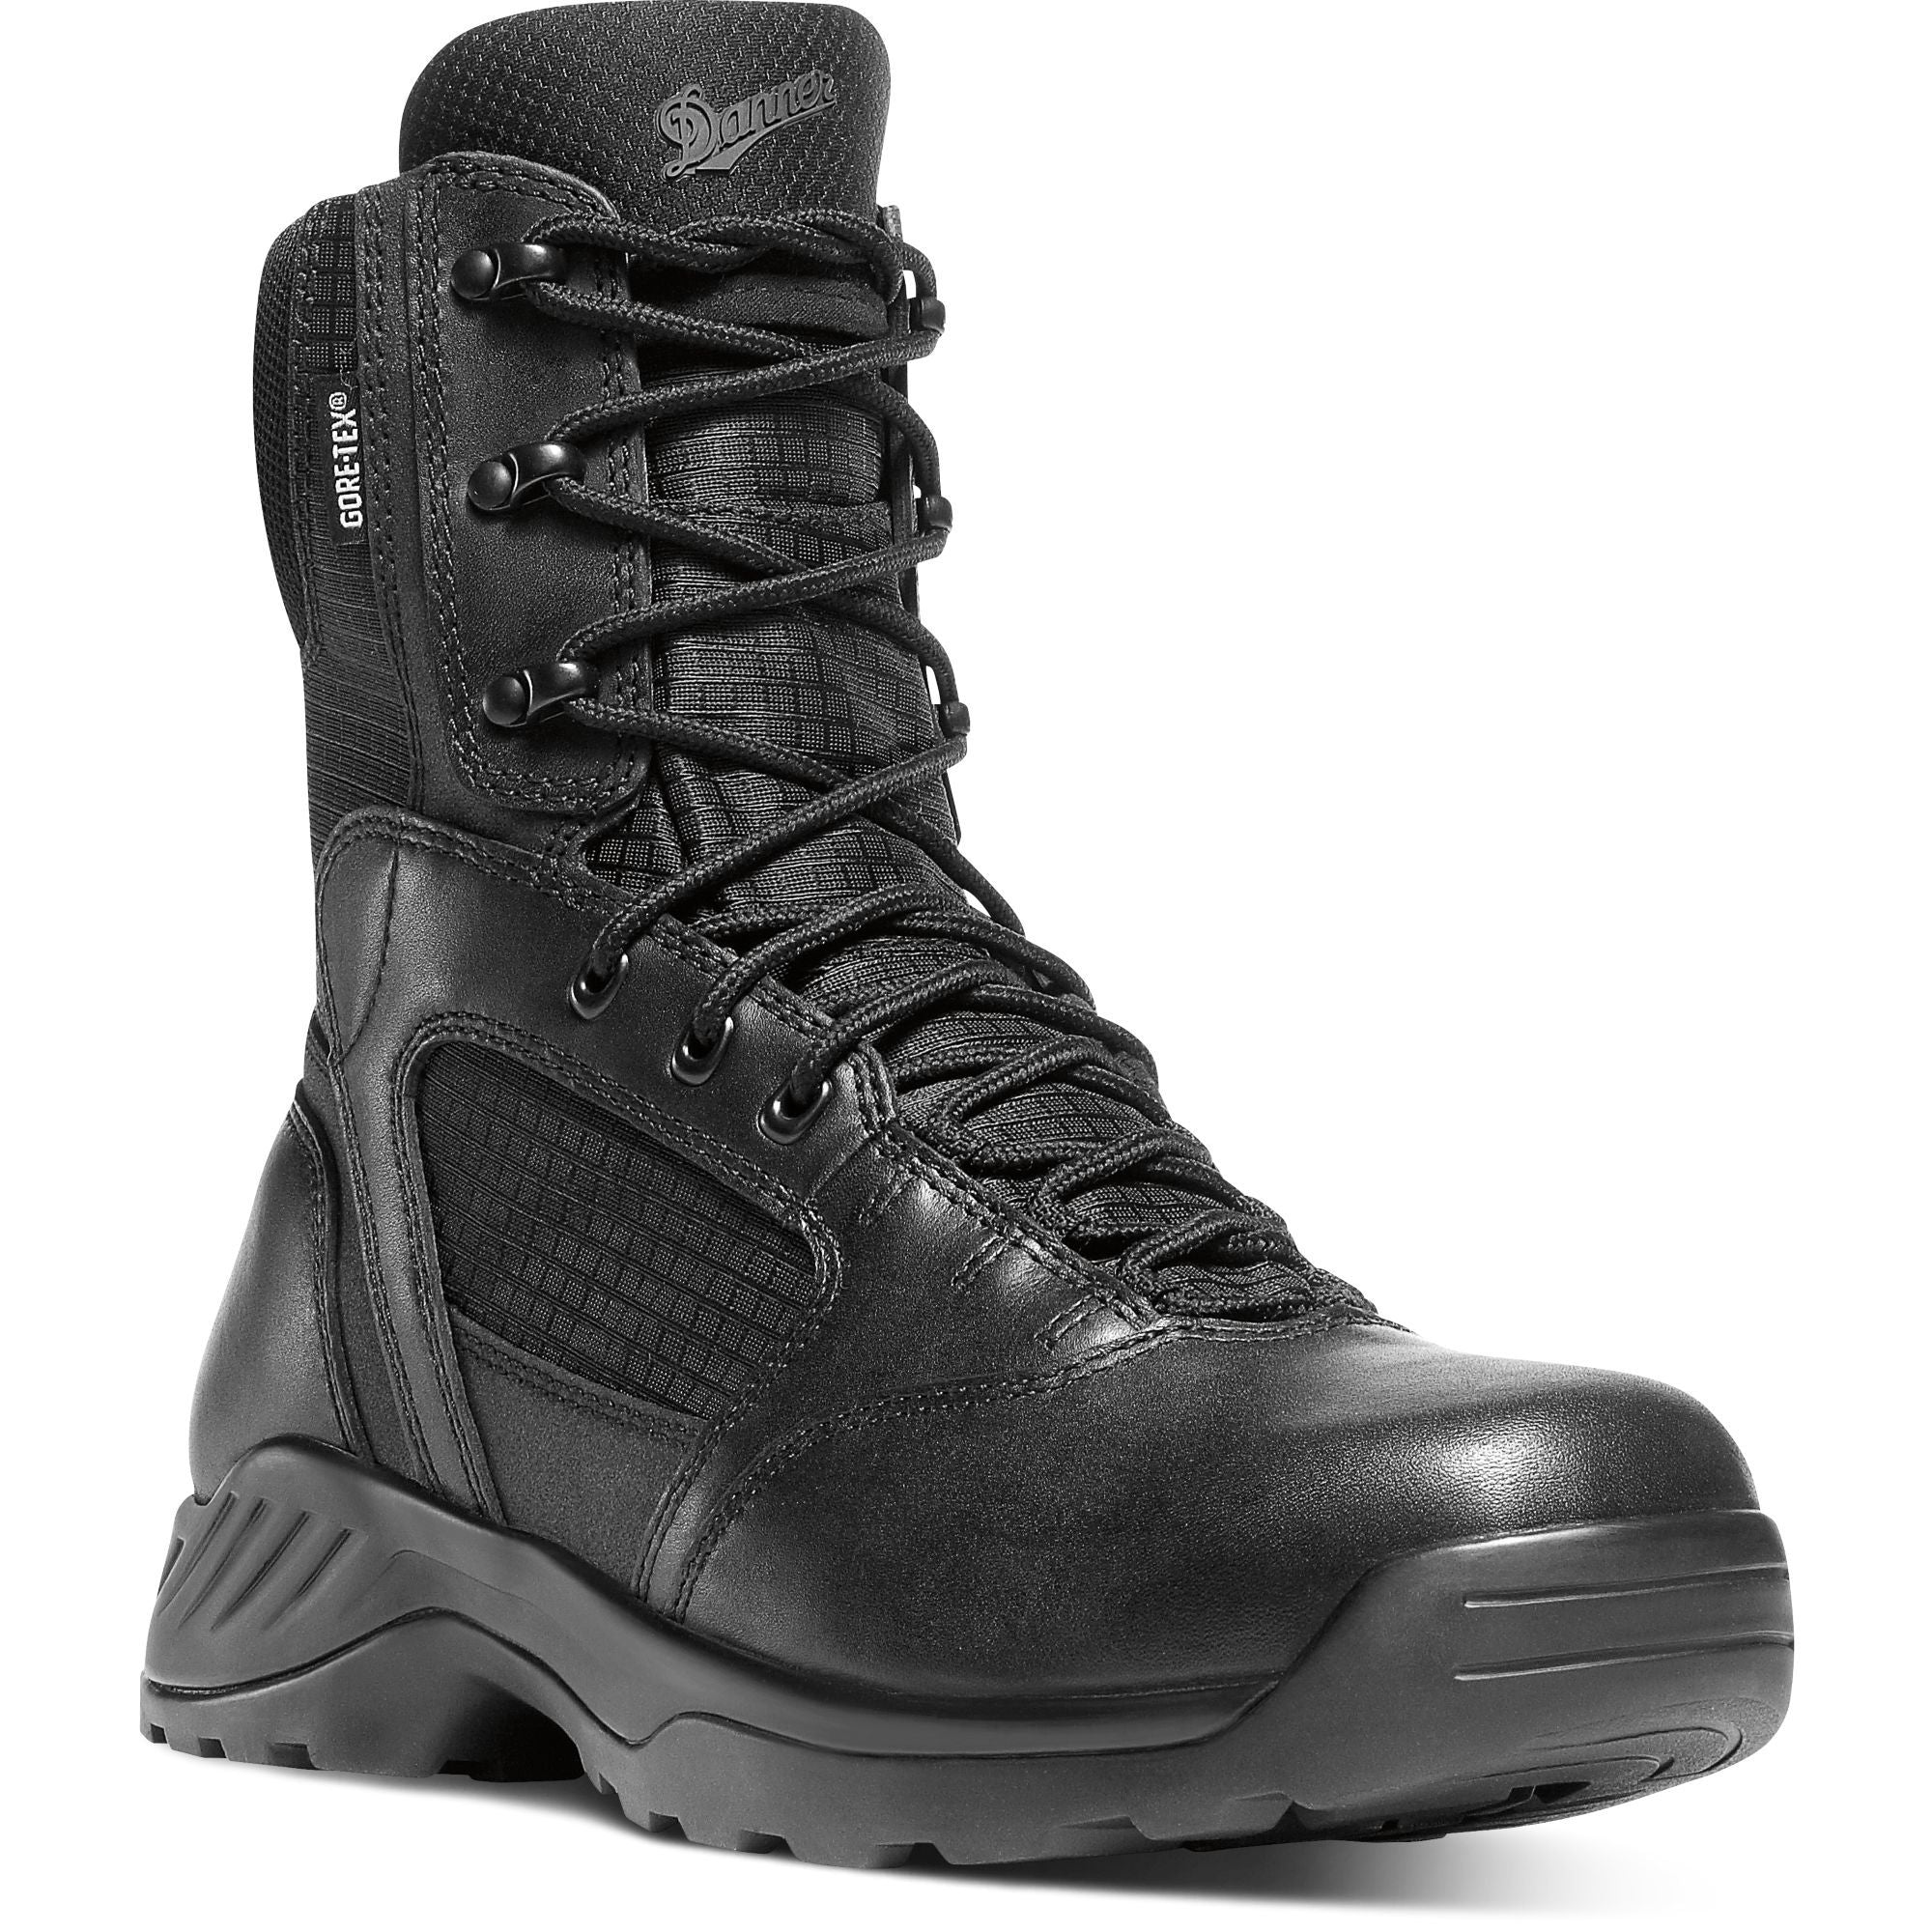 Danner Men's Kinetic 8" Waterproof Duty Boot - Black - 28010 7 / Medium / Black - Overlook Boots